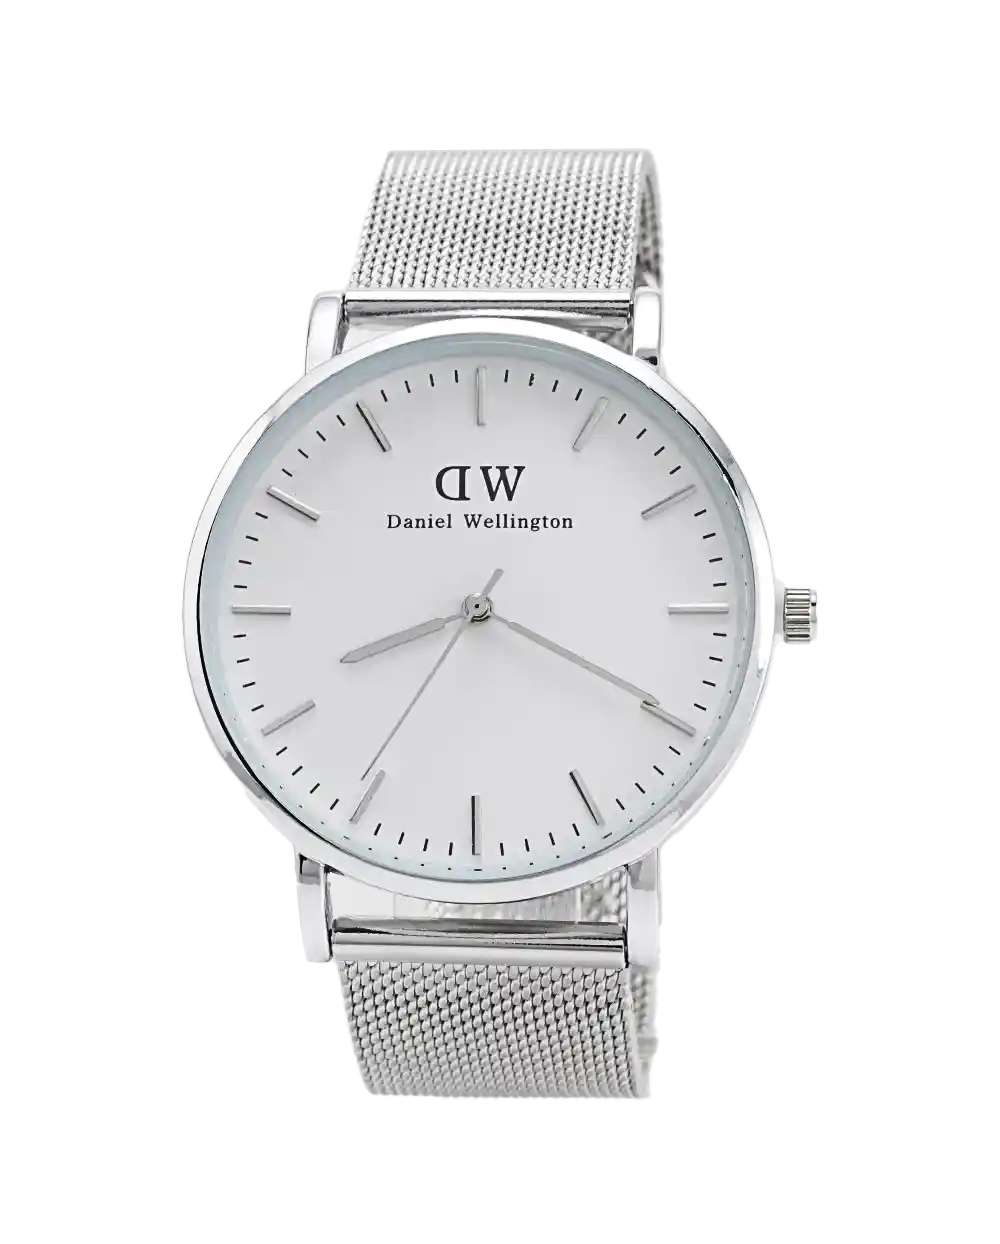 خرید ساعت مچی بند حصیری مردانه DW مدل 1622 با بهترین قیمت رنگ نقره ای یک دست به همراه ارسال رایگان به سراسر ایران و جعبه ی کادویی